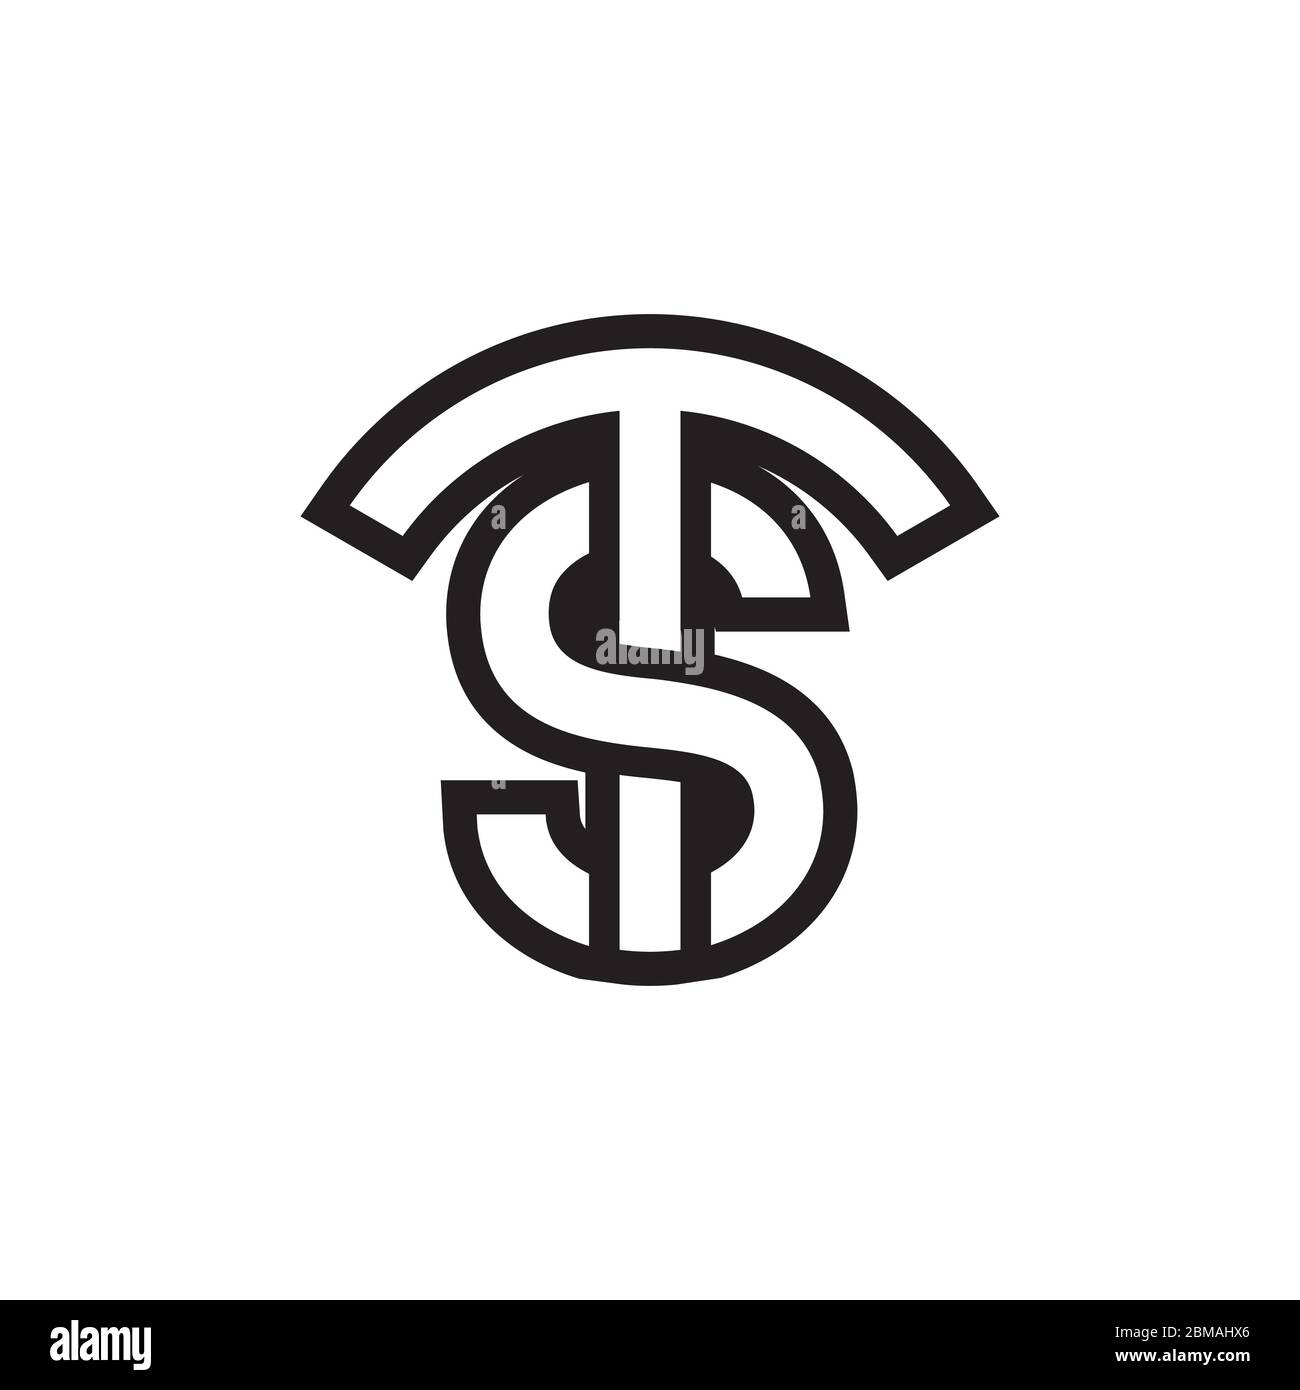 TS / ST letter logo design vector Stock Vector